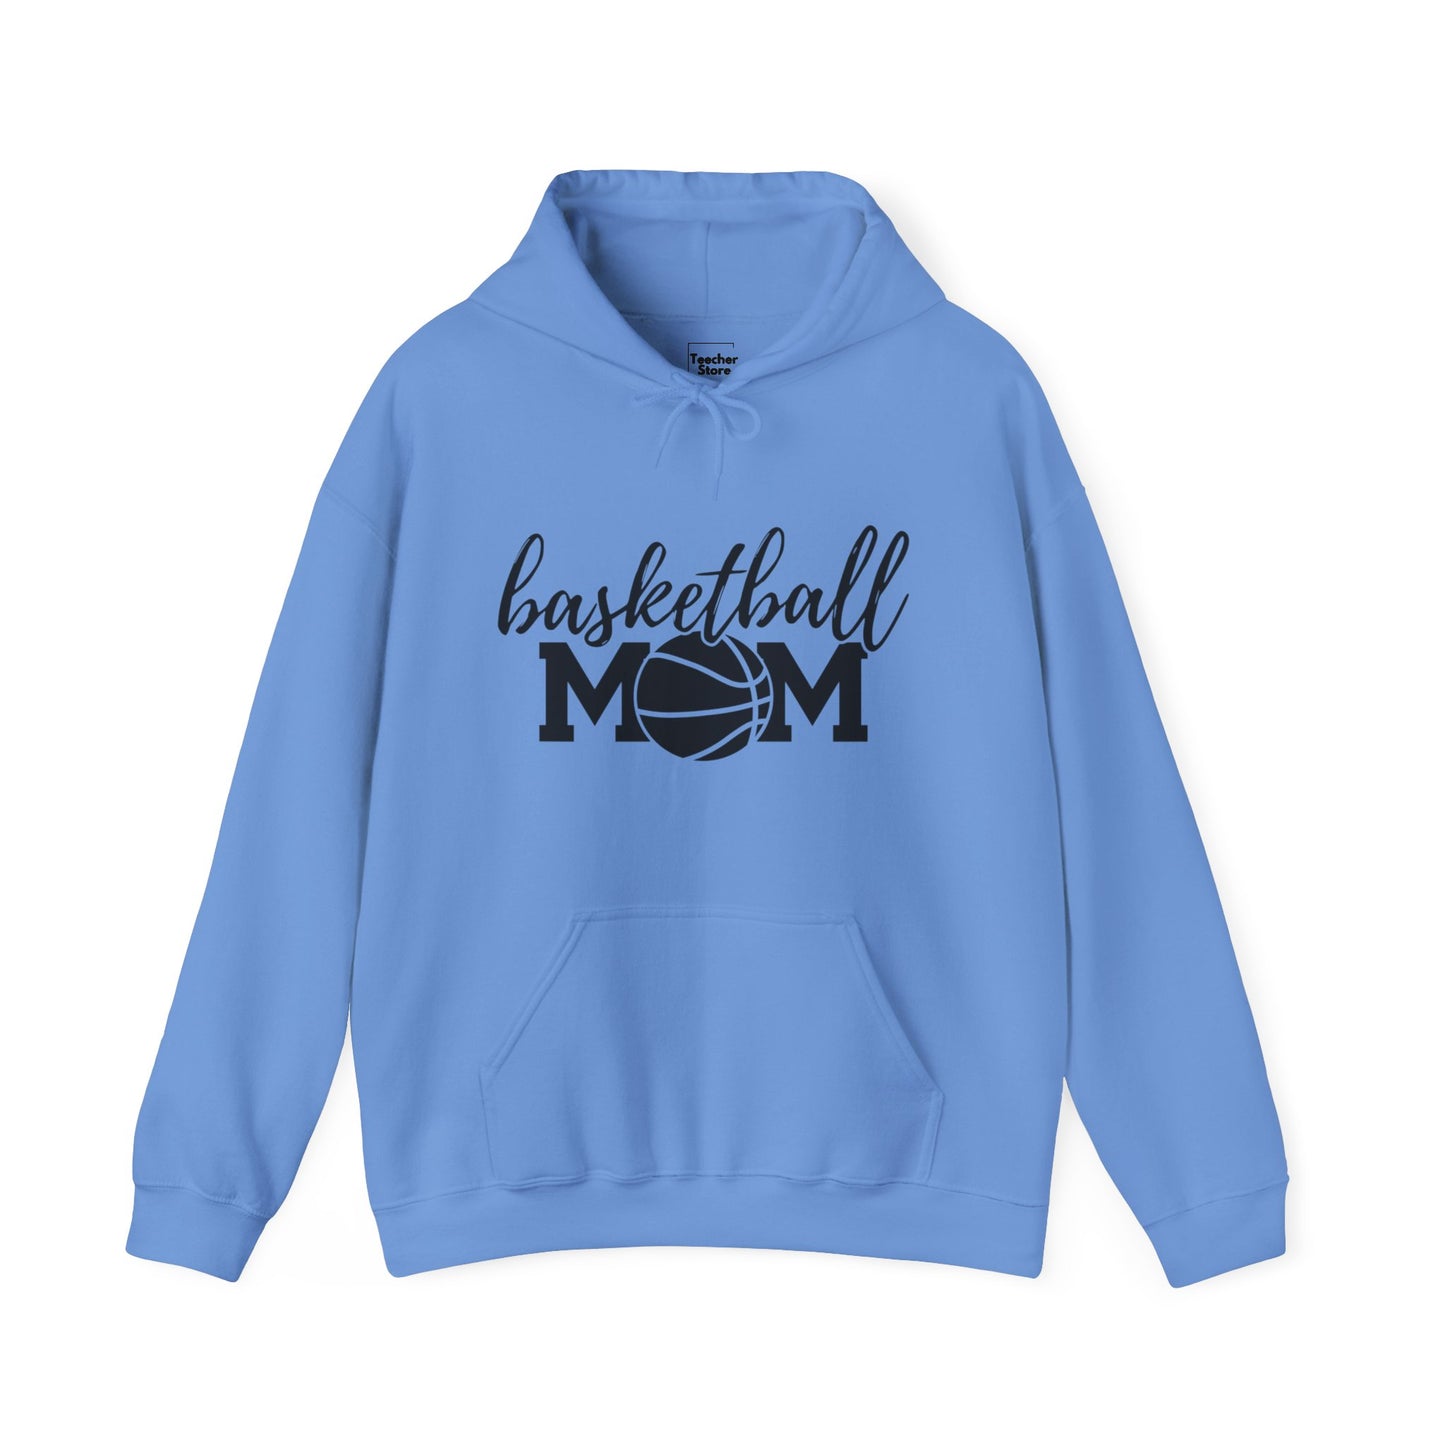 Basketball MOM Hooded Sweatshirt